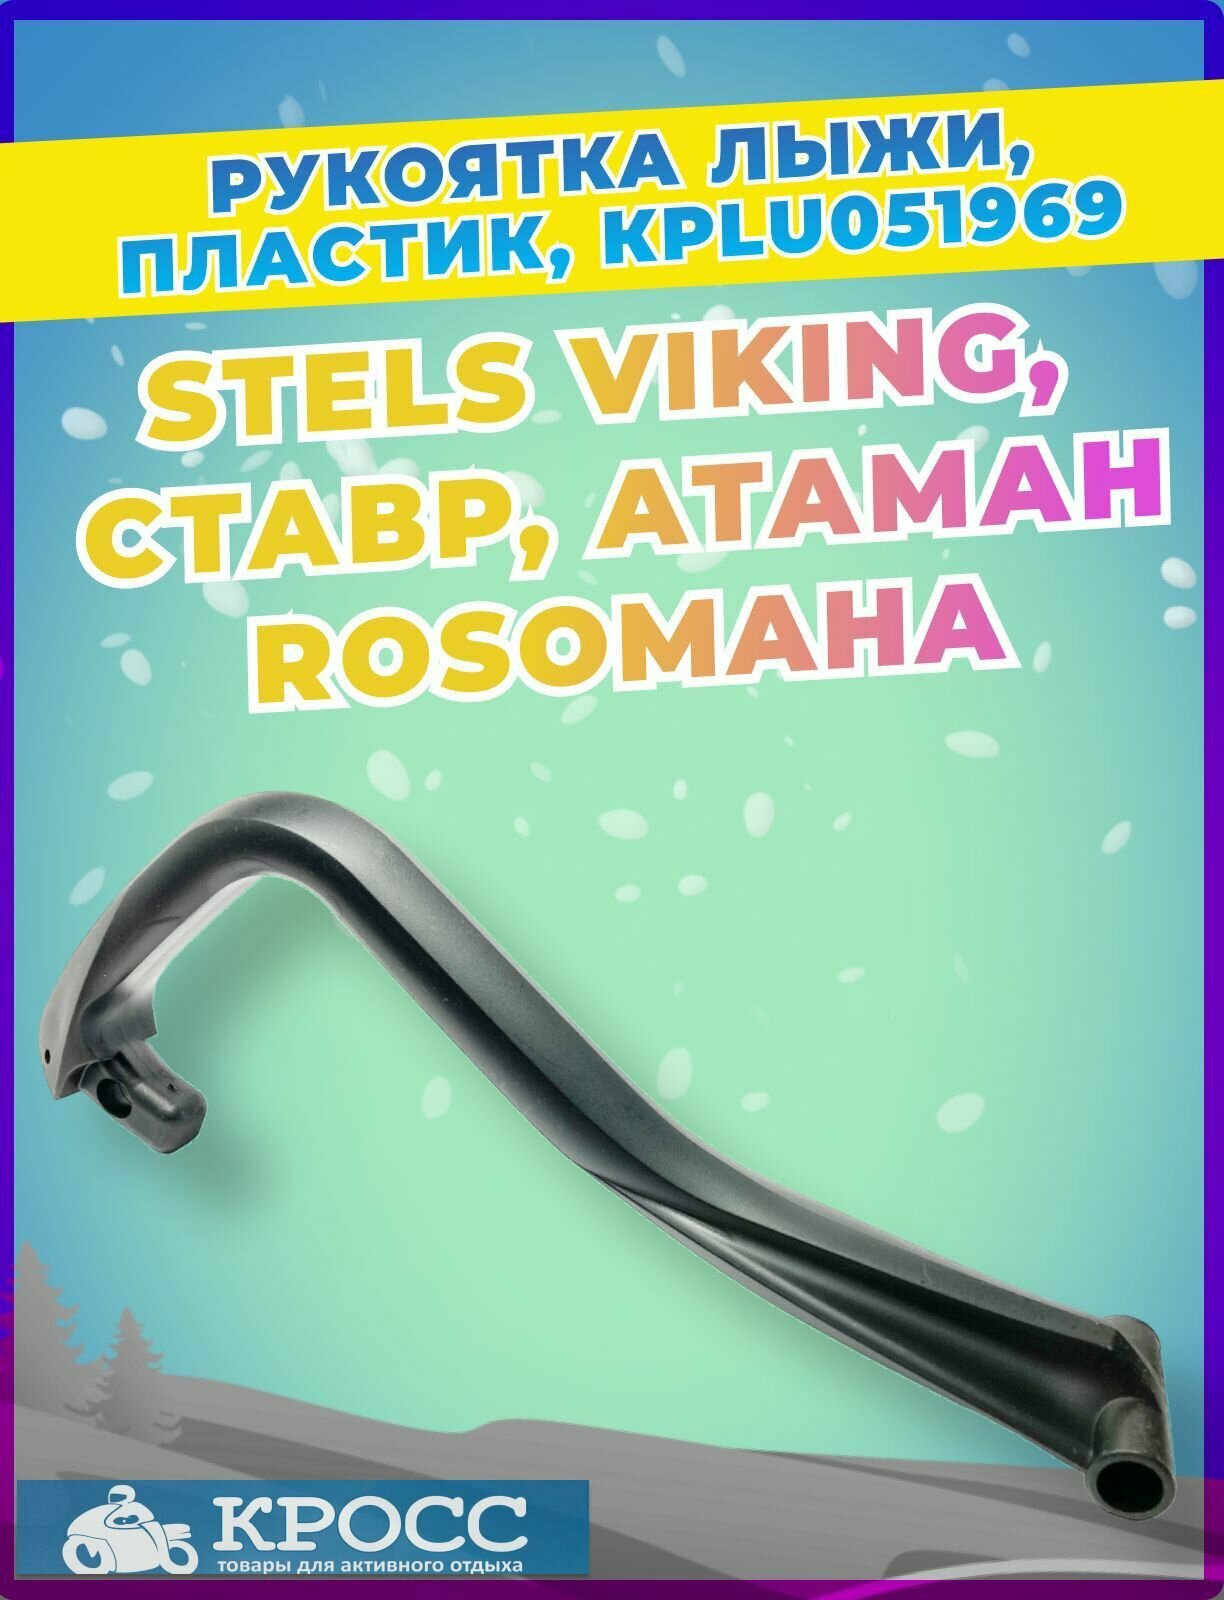 Рукоятка лыжи пластик JU051969 STELS Viking Rosomaha Атаман Ставр 310103-800-0000